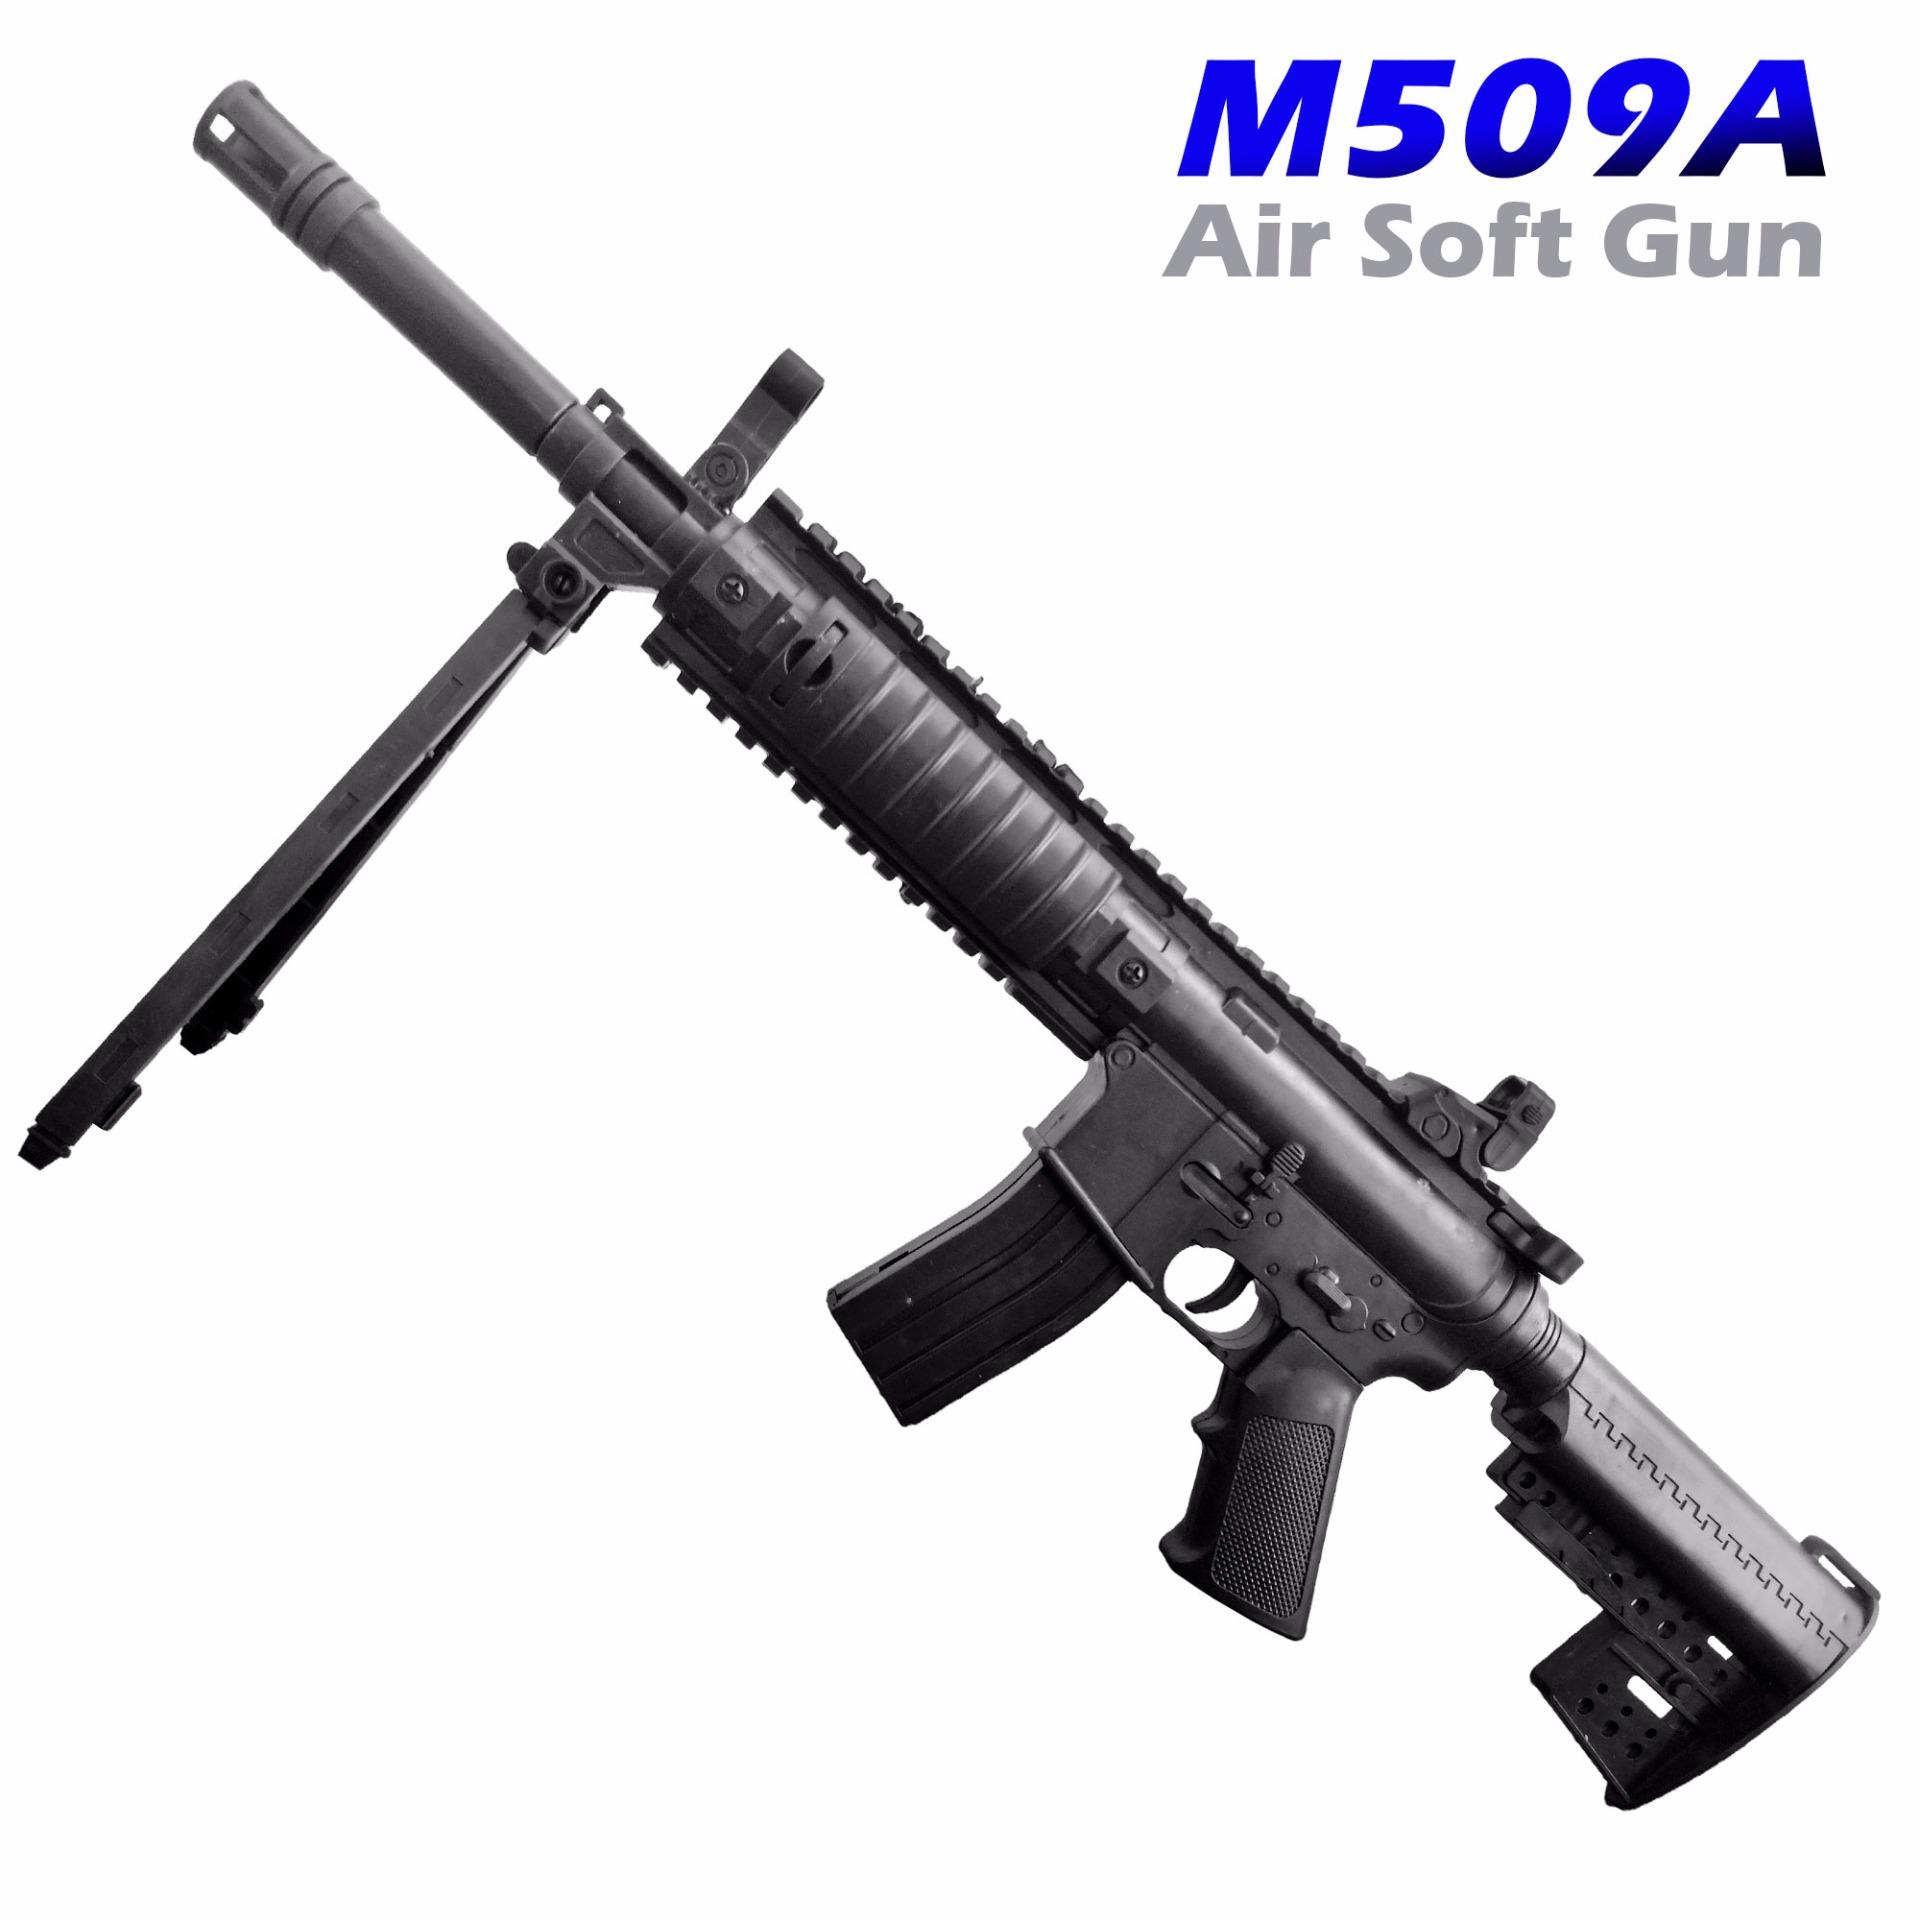 Pink Toys ปืนอัดลม สีดำ ระบบสปริง ชักยิงด้านหลัง บอดี้พลาสติกถ่วงน้ำหนัก ระยะหวังผล 8-10m  M509A